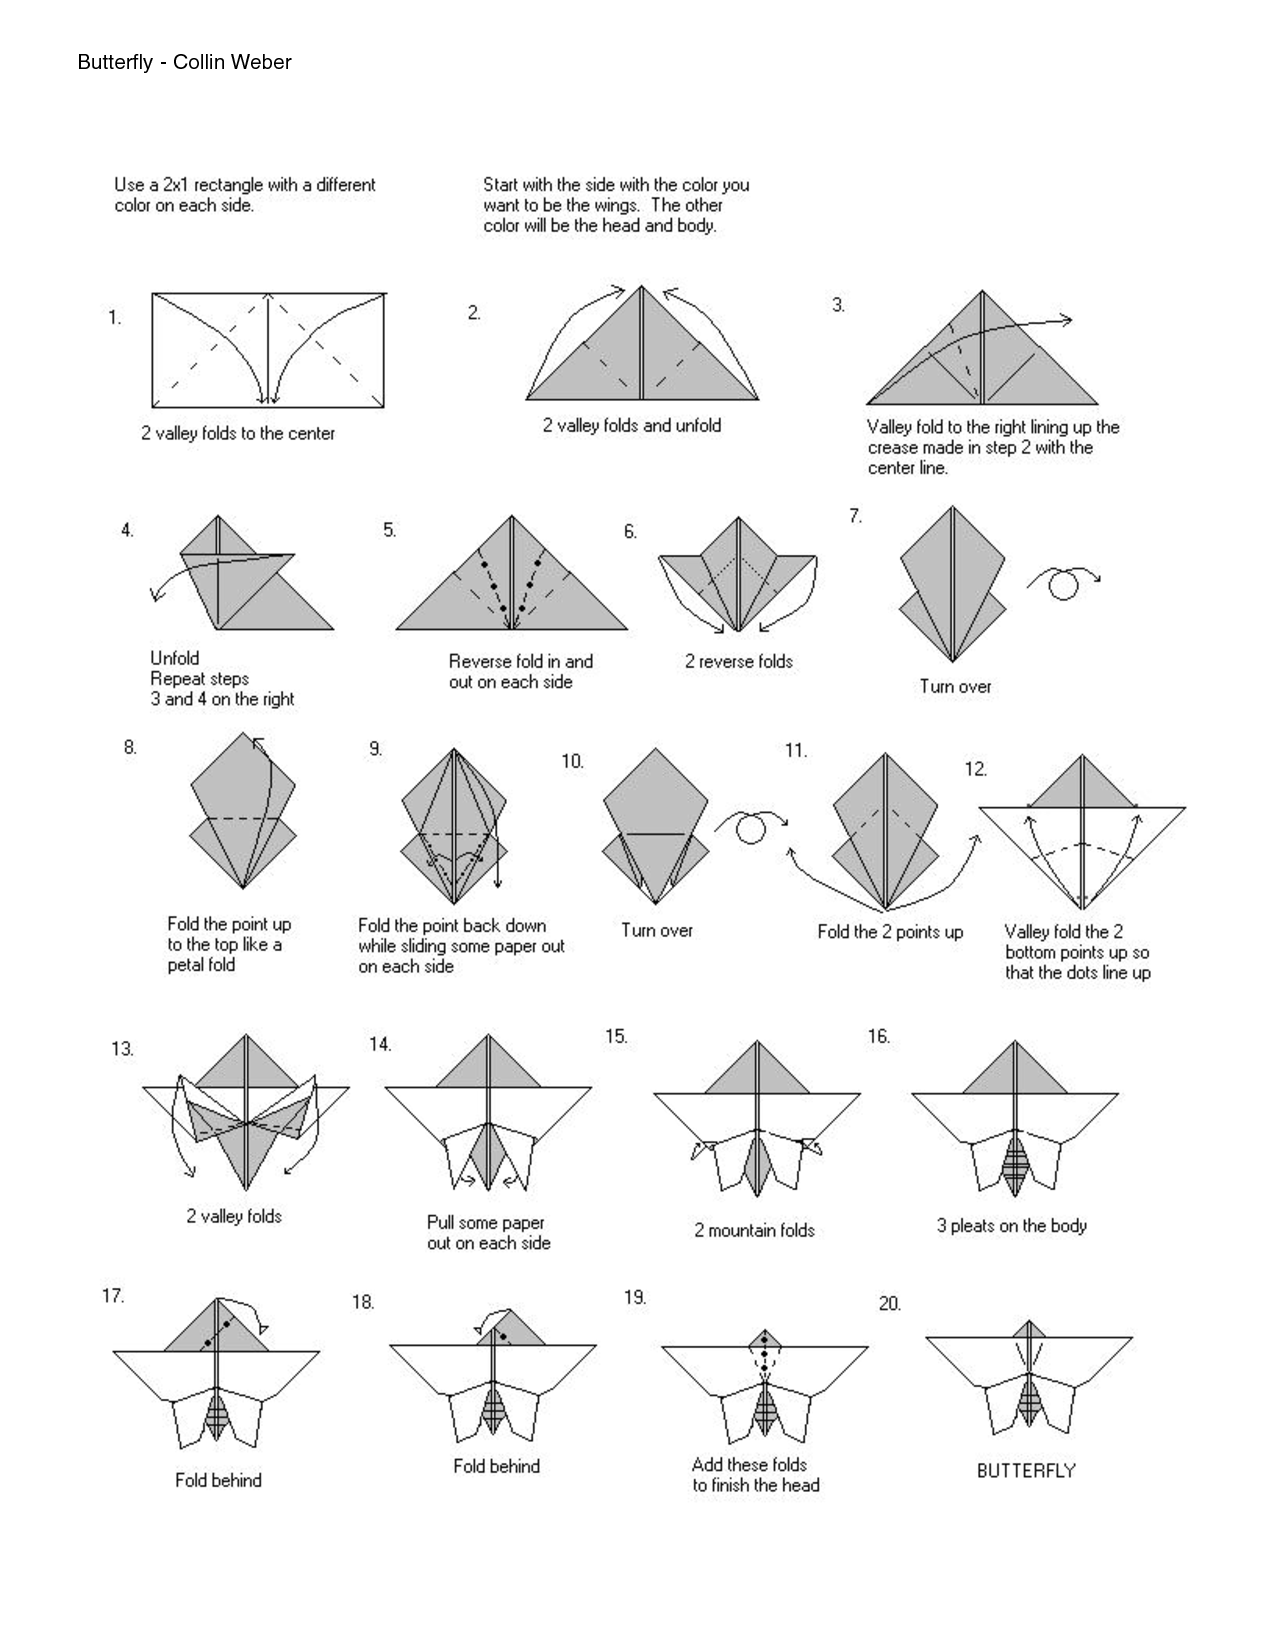 Схема оригами бабочка: Объемная бабочка оригами | МОРЕ творческих идей для детей